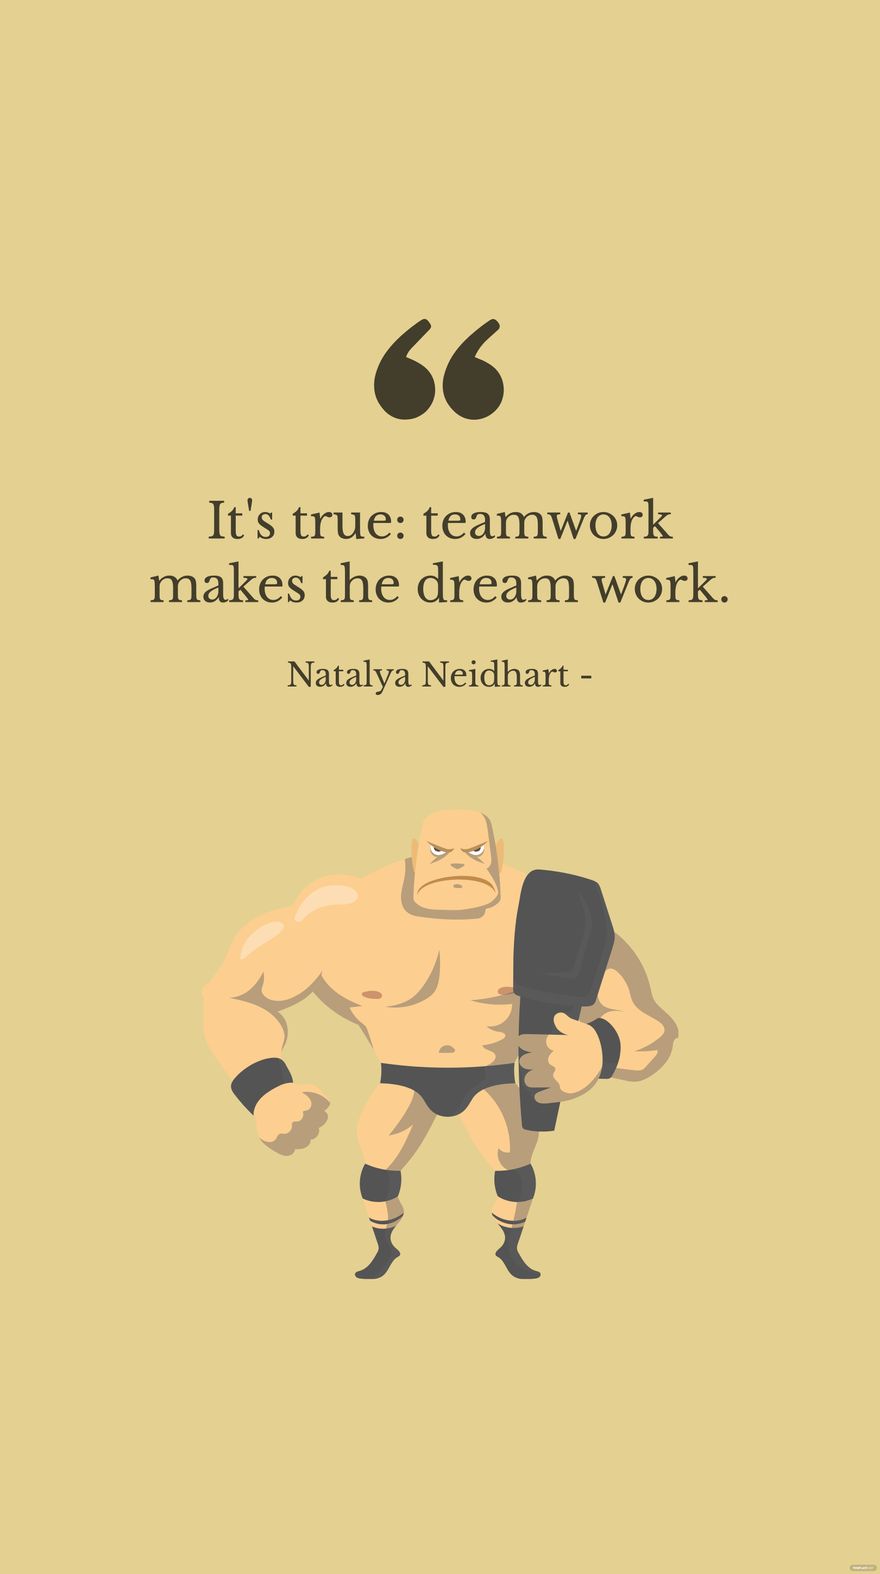 Free Natalya Neidhart - It's true: teamwork makes the dream work.